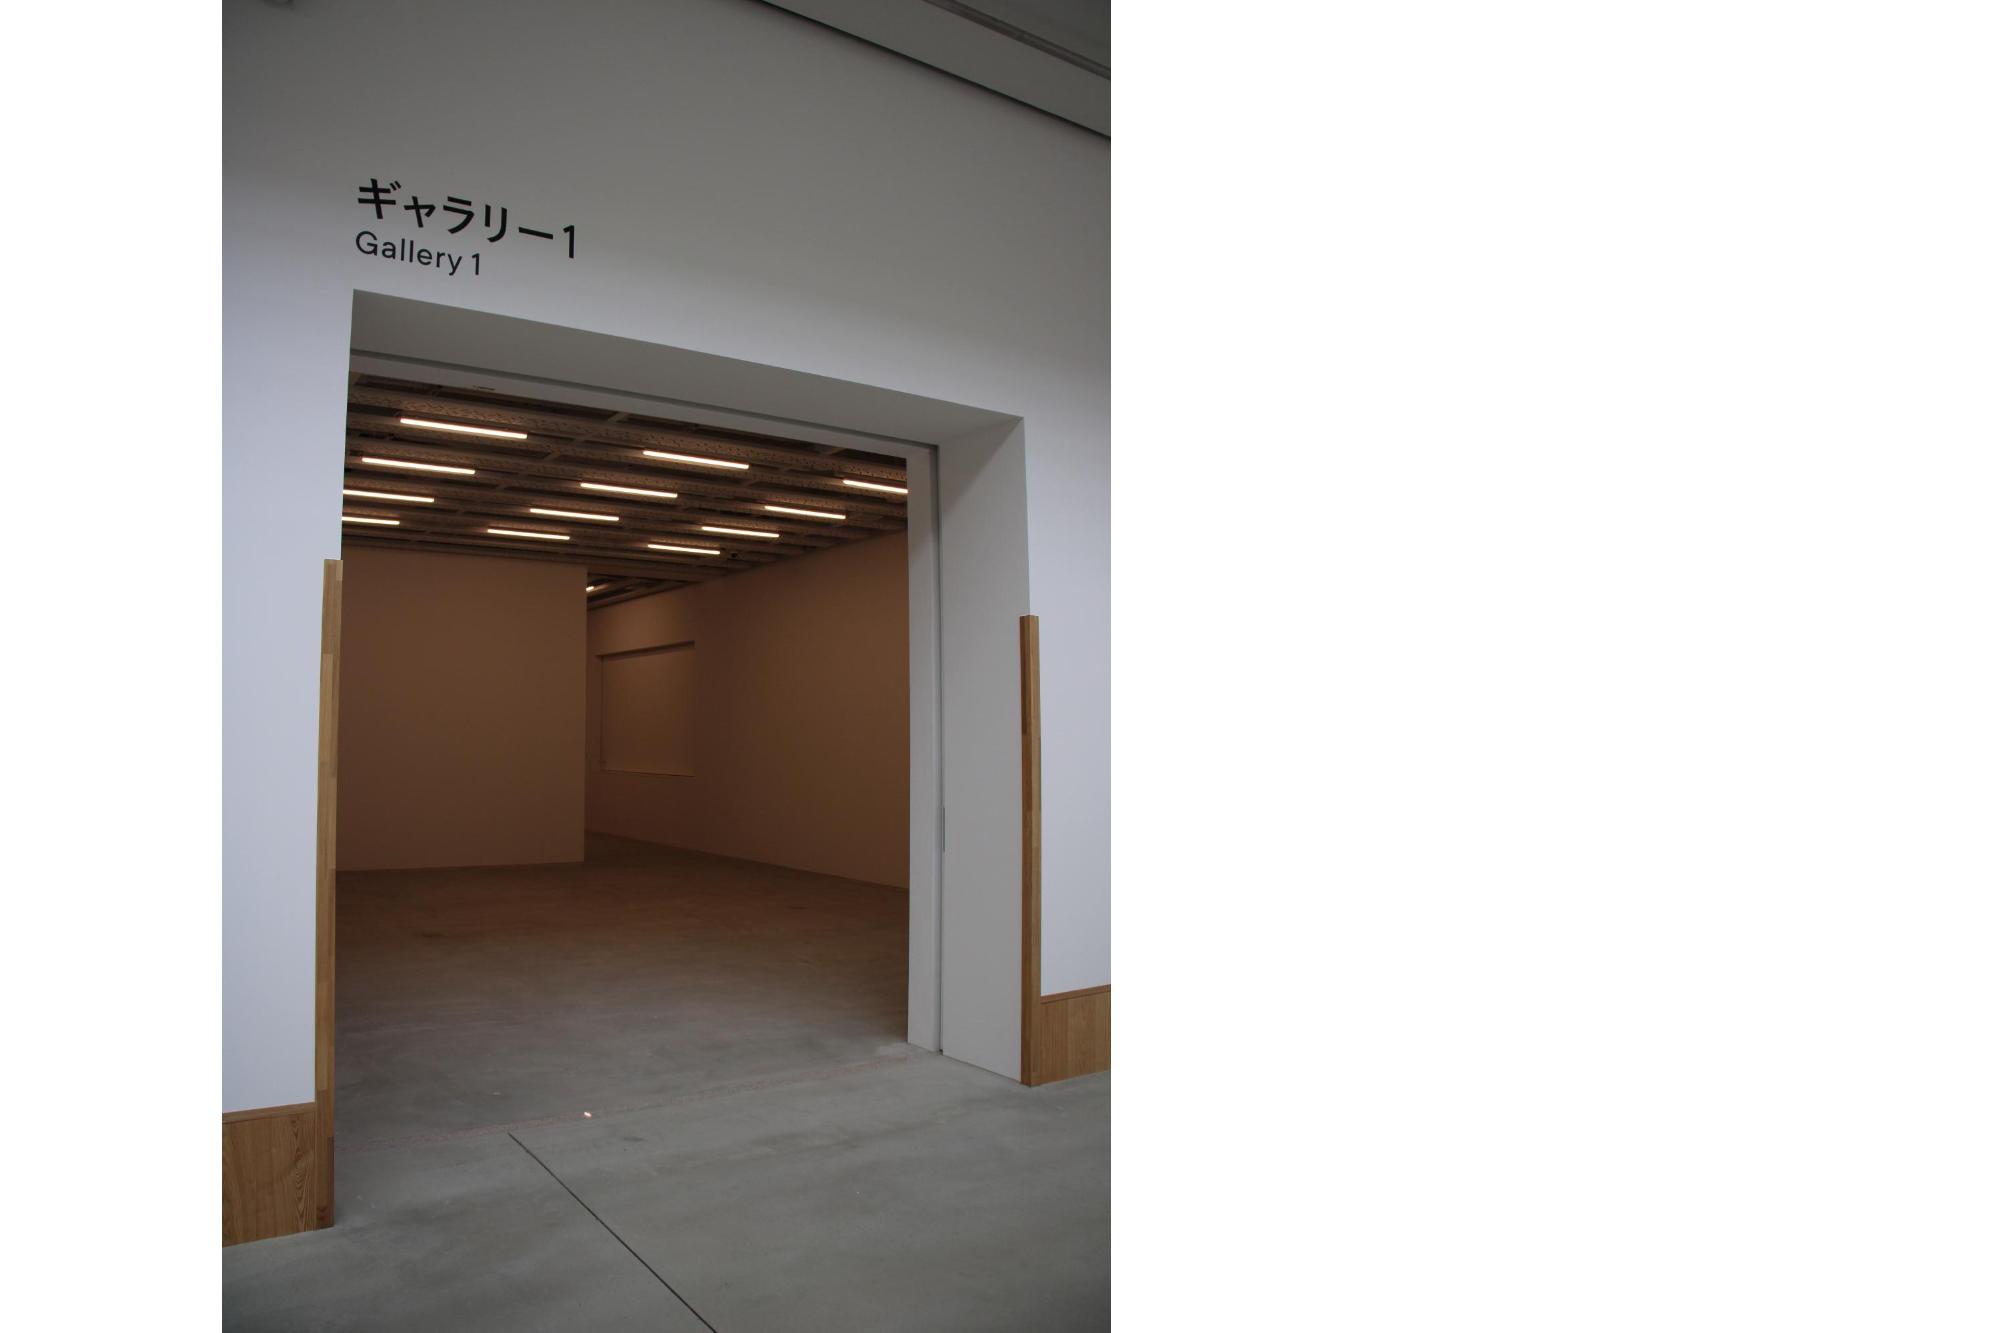 段差を極力なくした八戸市美術館のギャラリー1の入口の写真